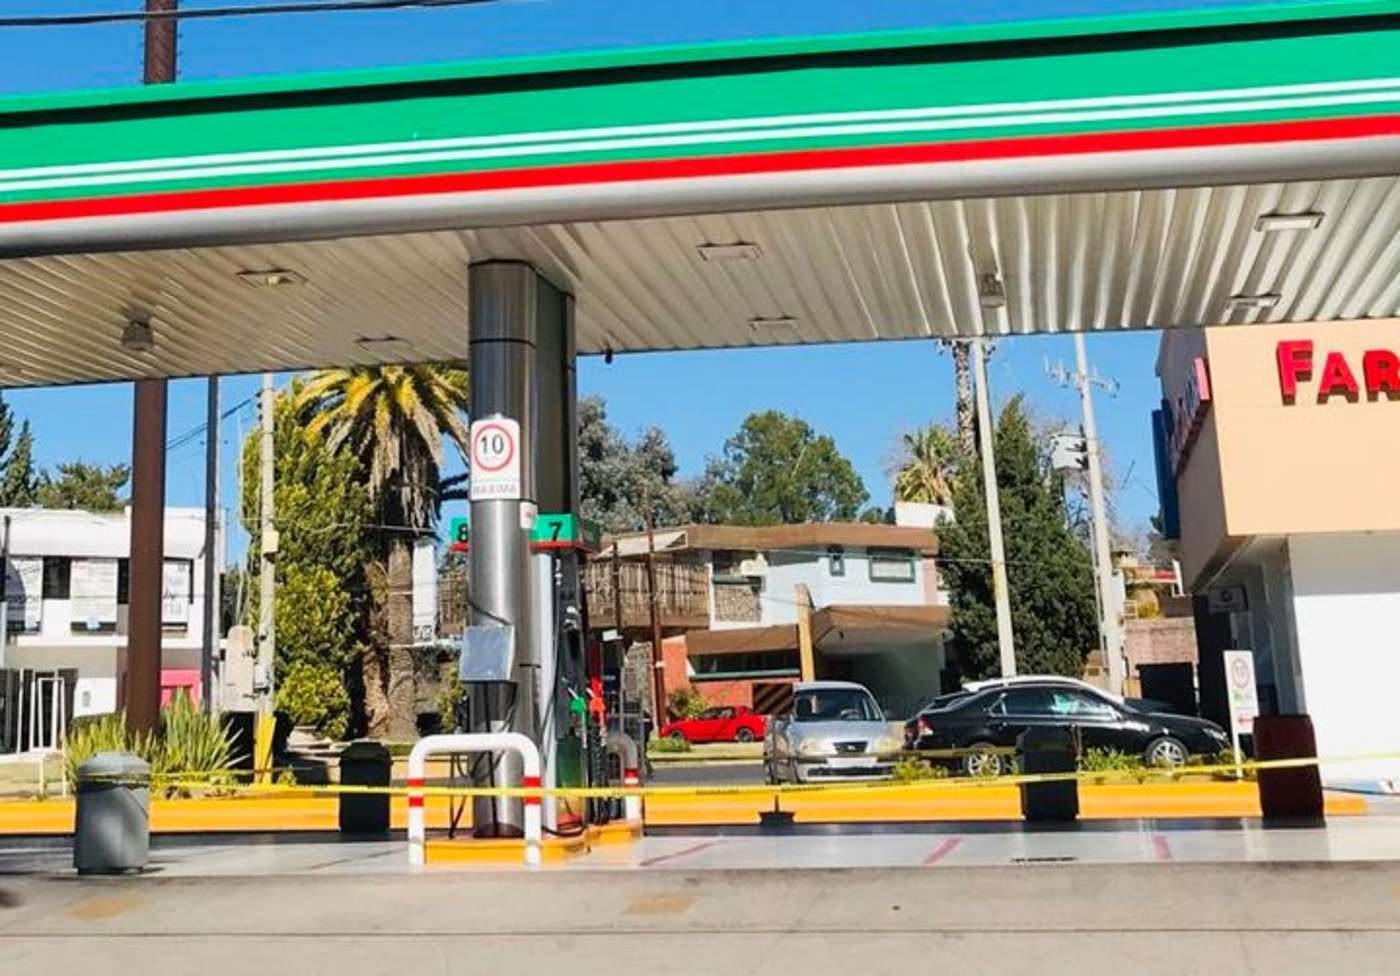 'En Durango si no se encuentra gasolina en una estación, se puede acudir a otra, cuando en otras ciudades hay una falta de combustible generalizada'. (EL SIGLO DE DURANGO)

